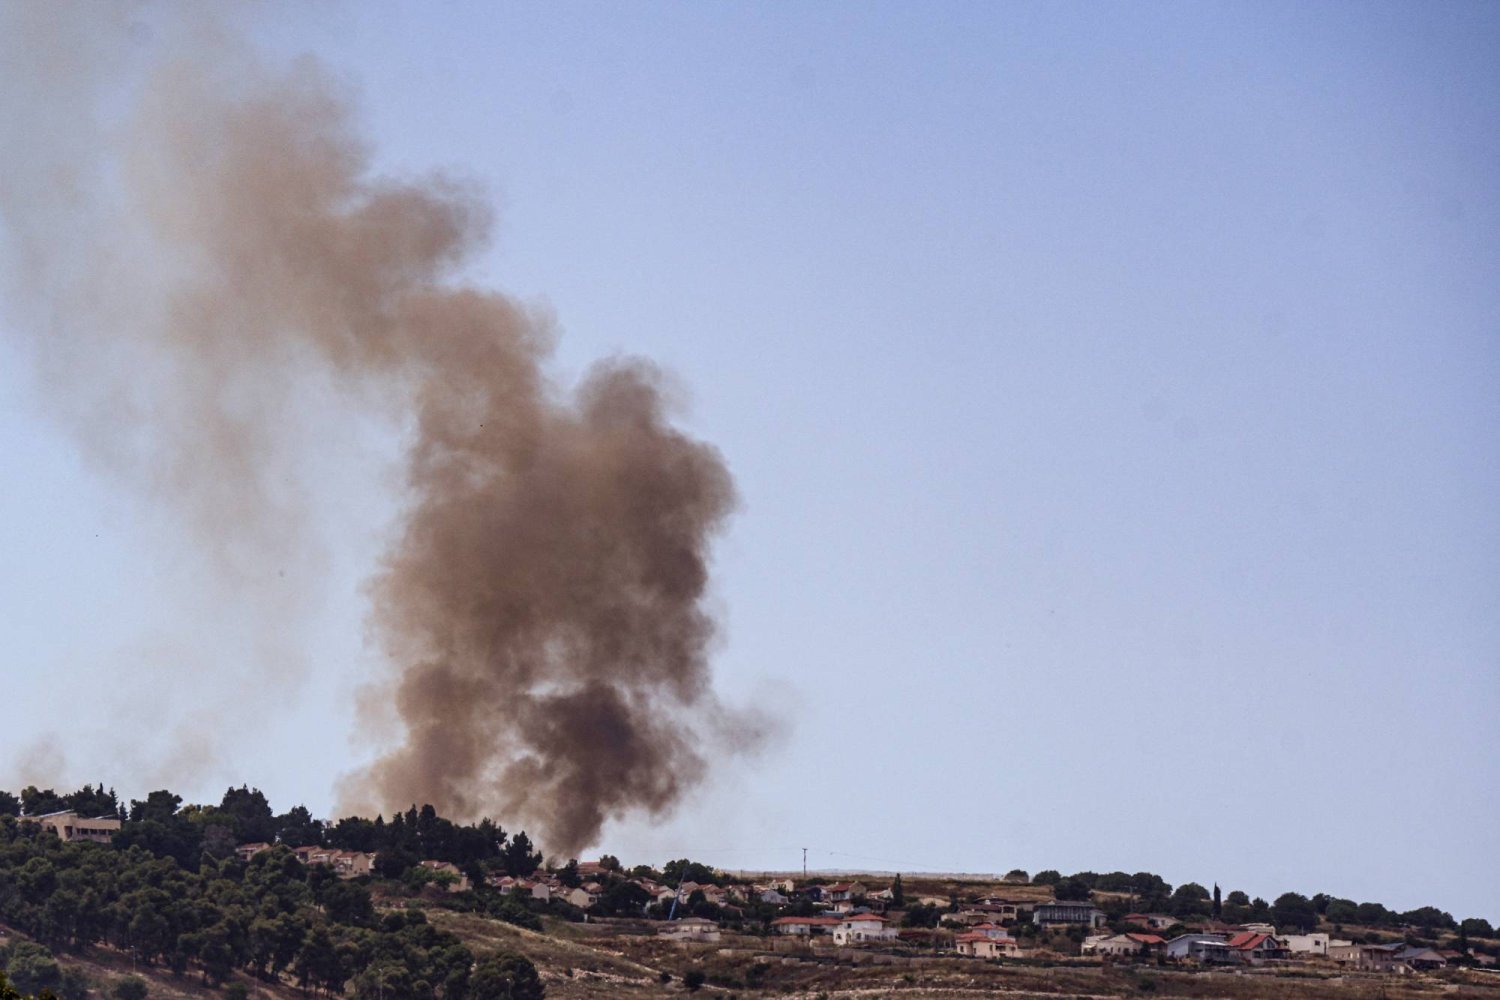 الجيش الإسرائيلي: استهدفنا مبنى يؤوي عناصر لـ”حزب الله” في يارون